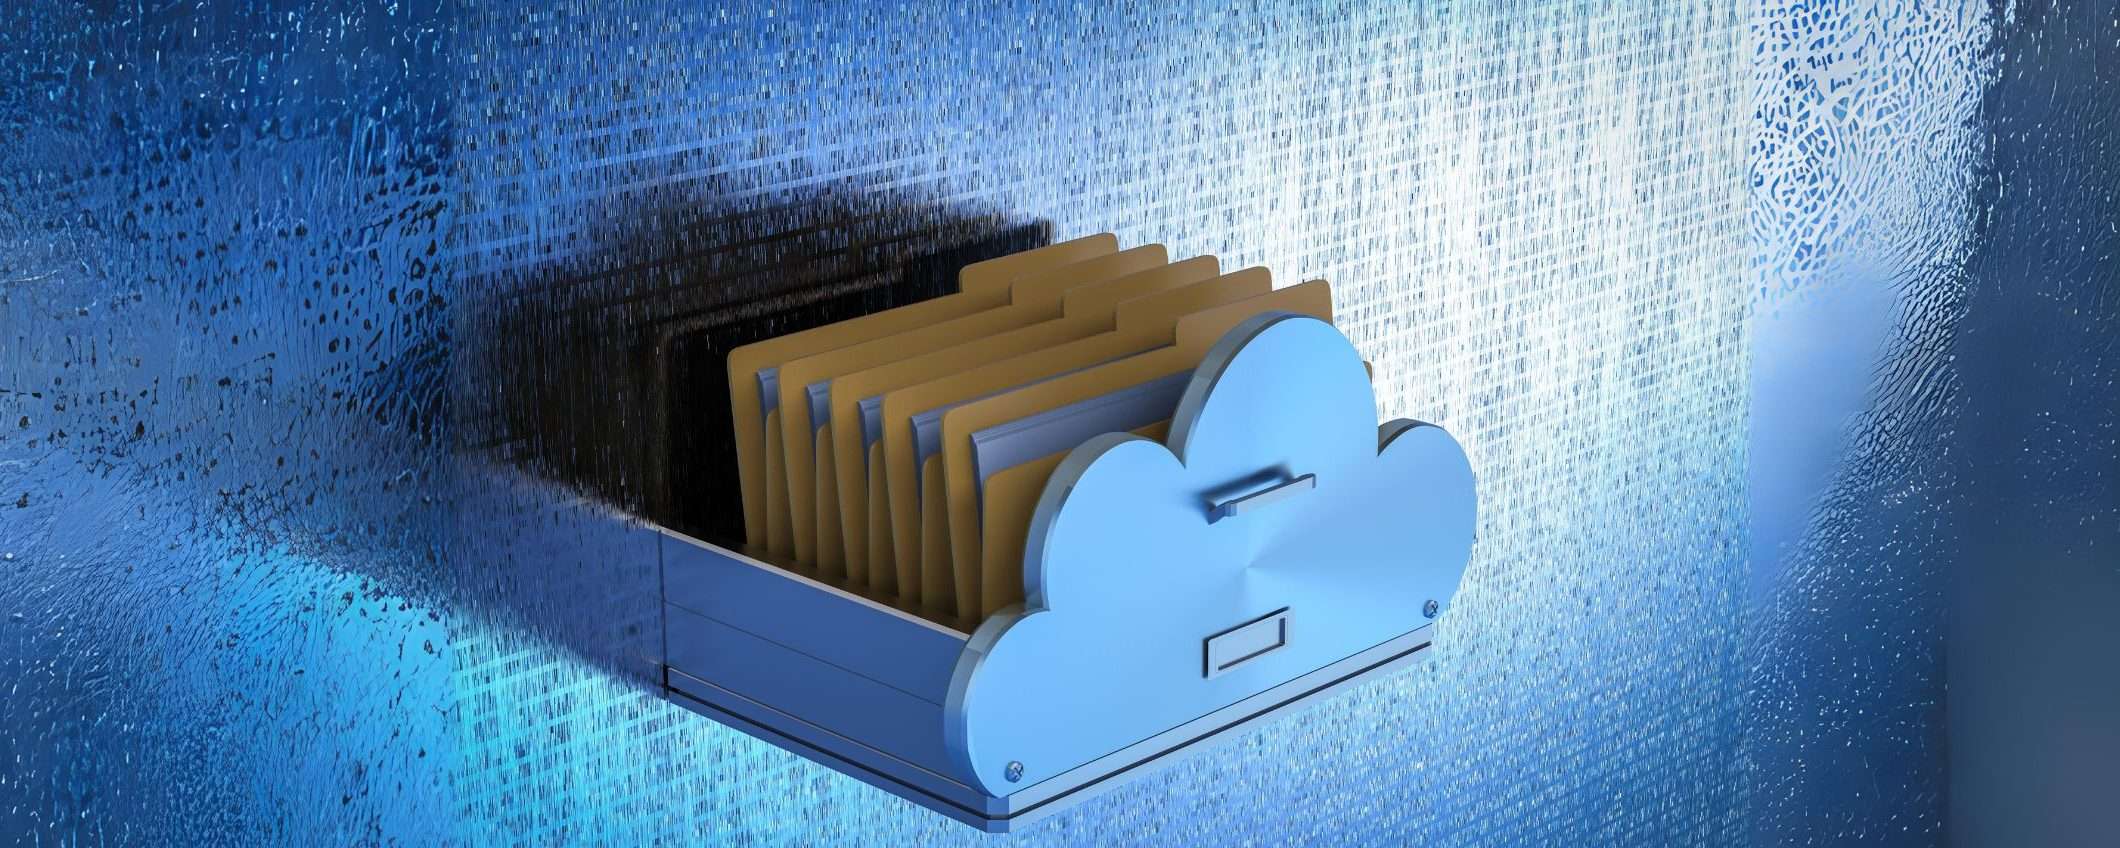 Cloud storage blindato con Internxt: piani annuali in offerta